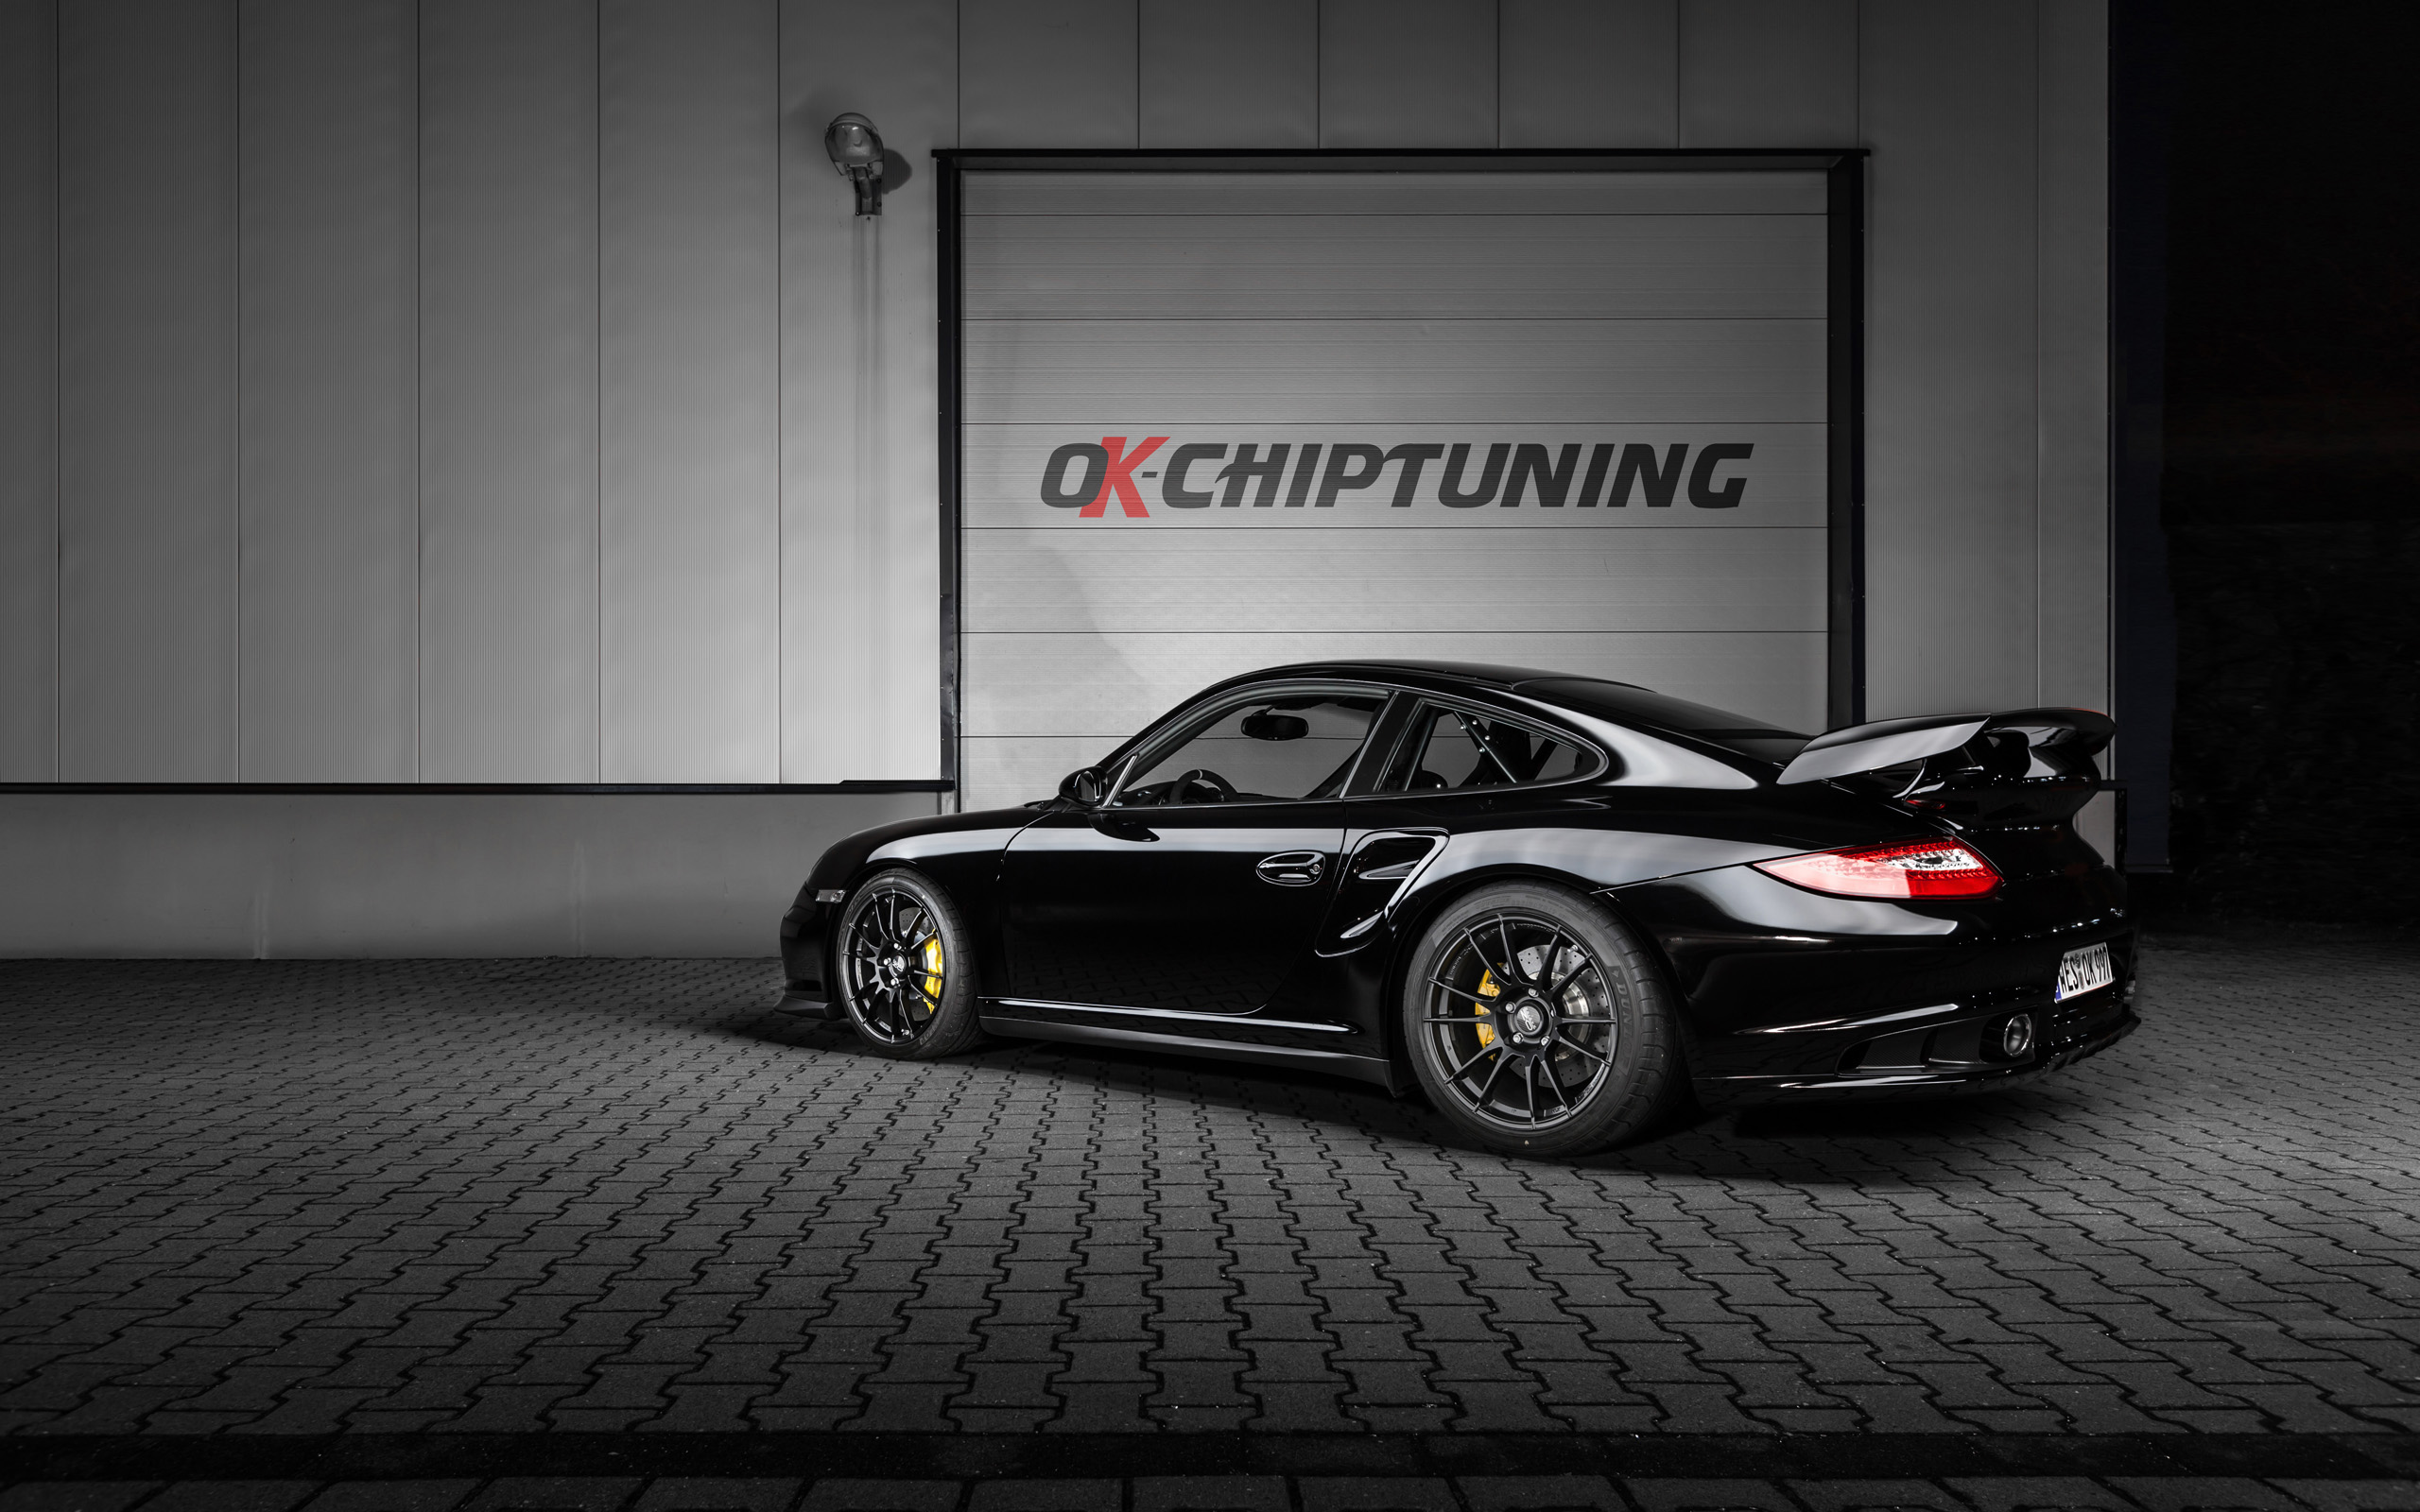 2014, Ok chiptuning, Porsche, Gt2, Clubsport, Tuning, Supercar Wallpaper